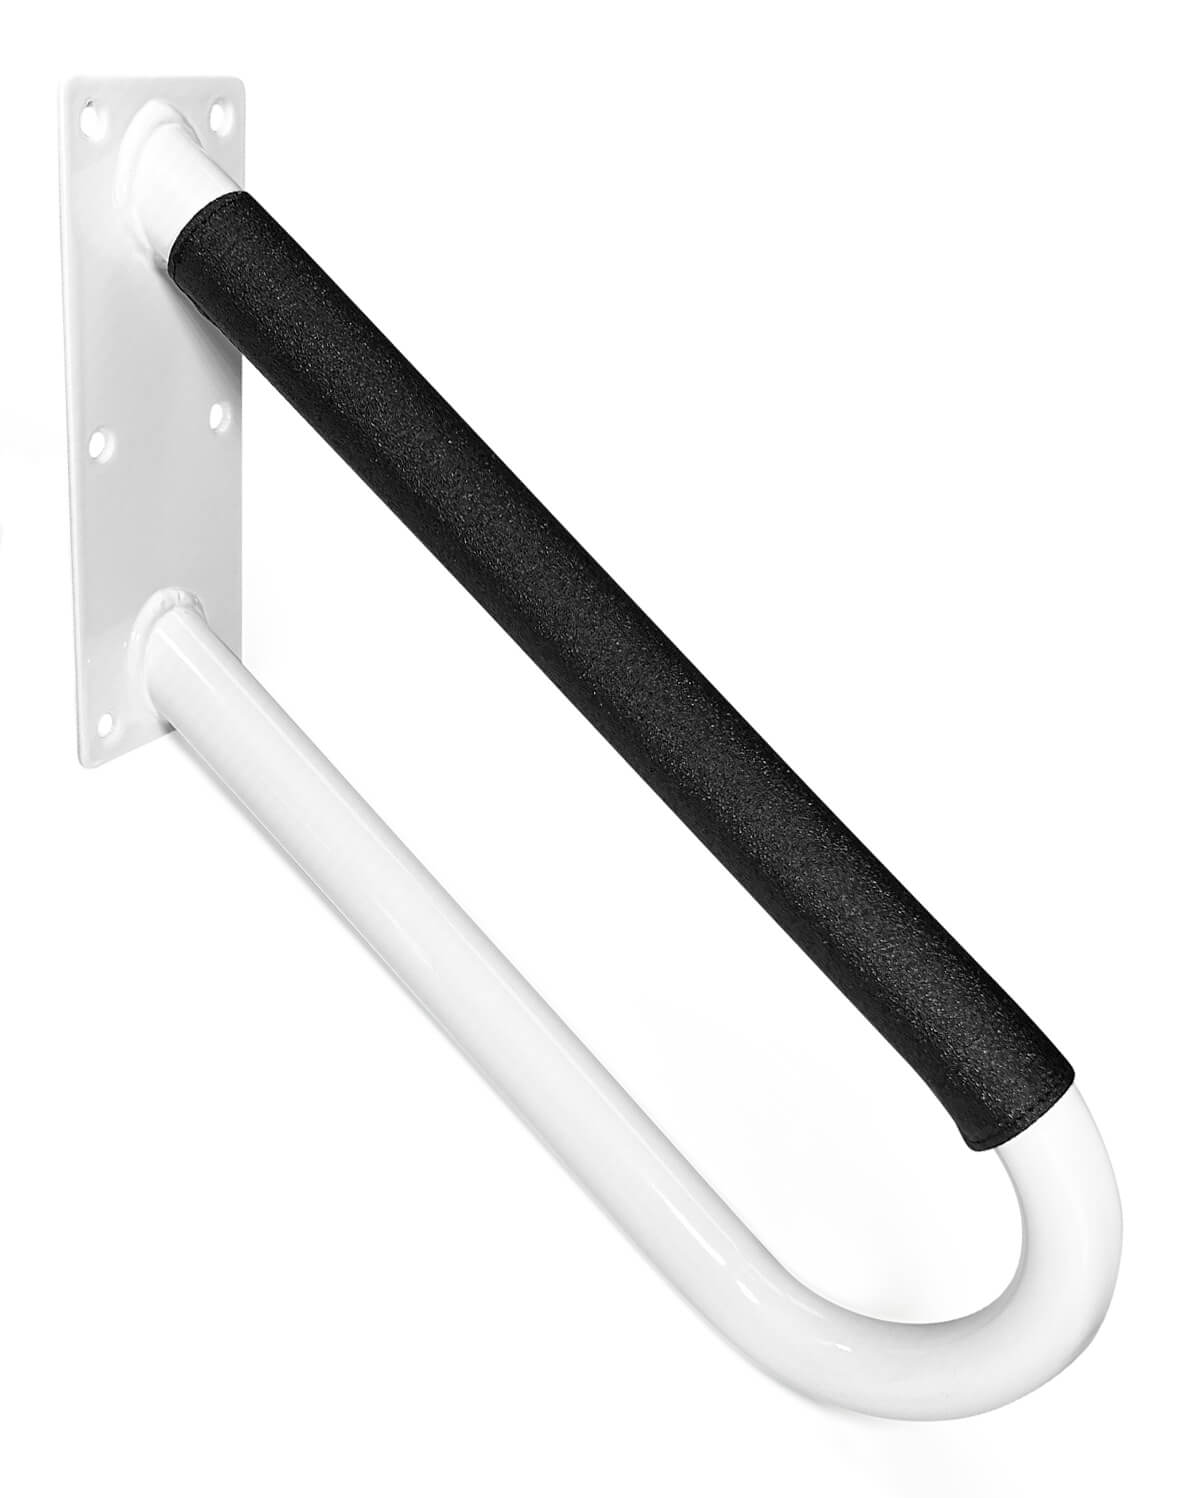 No-Slip Zip Handrail Grip - Hold-Tight Handrails 